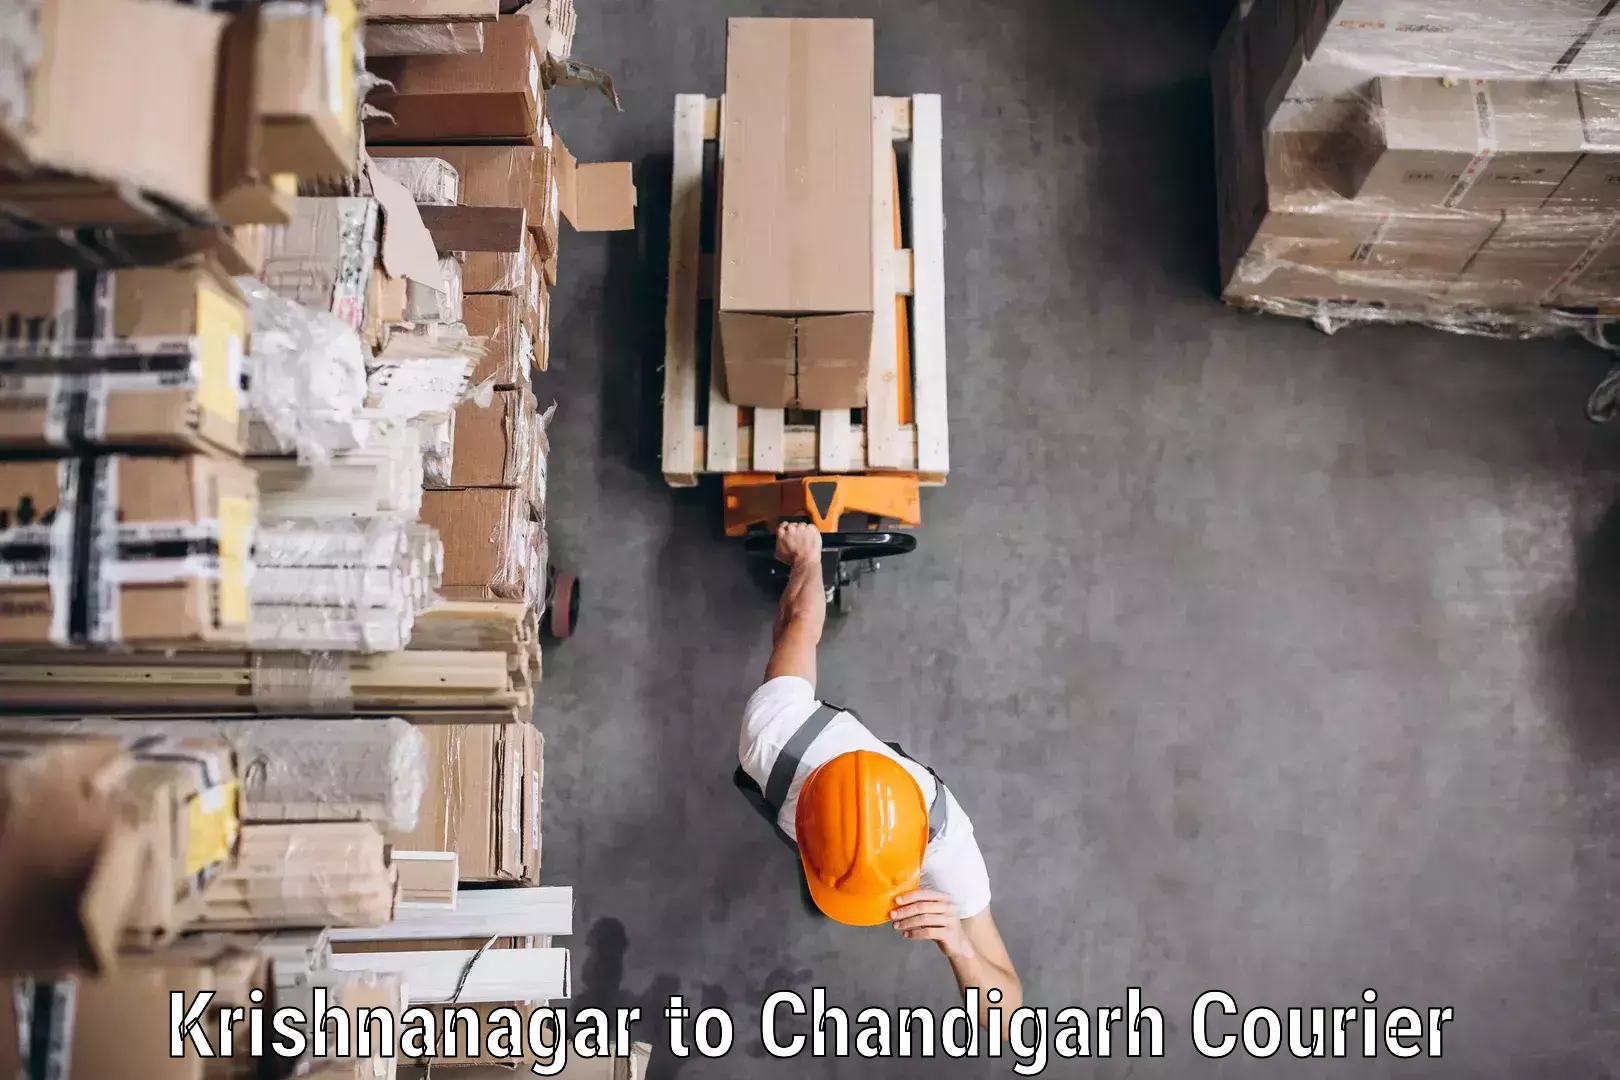 Nationwide courier service Krishnanagar to Chandigarh